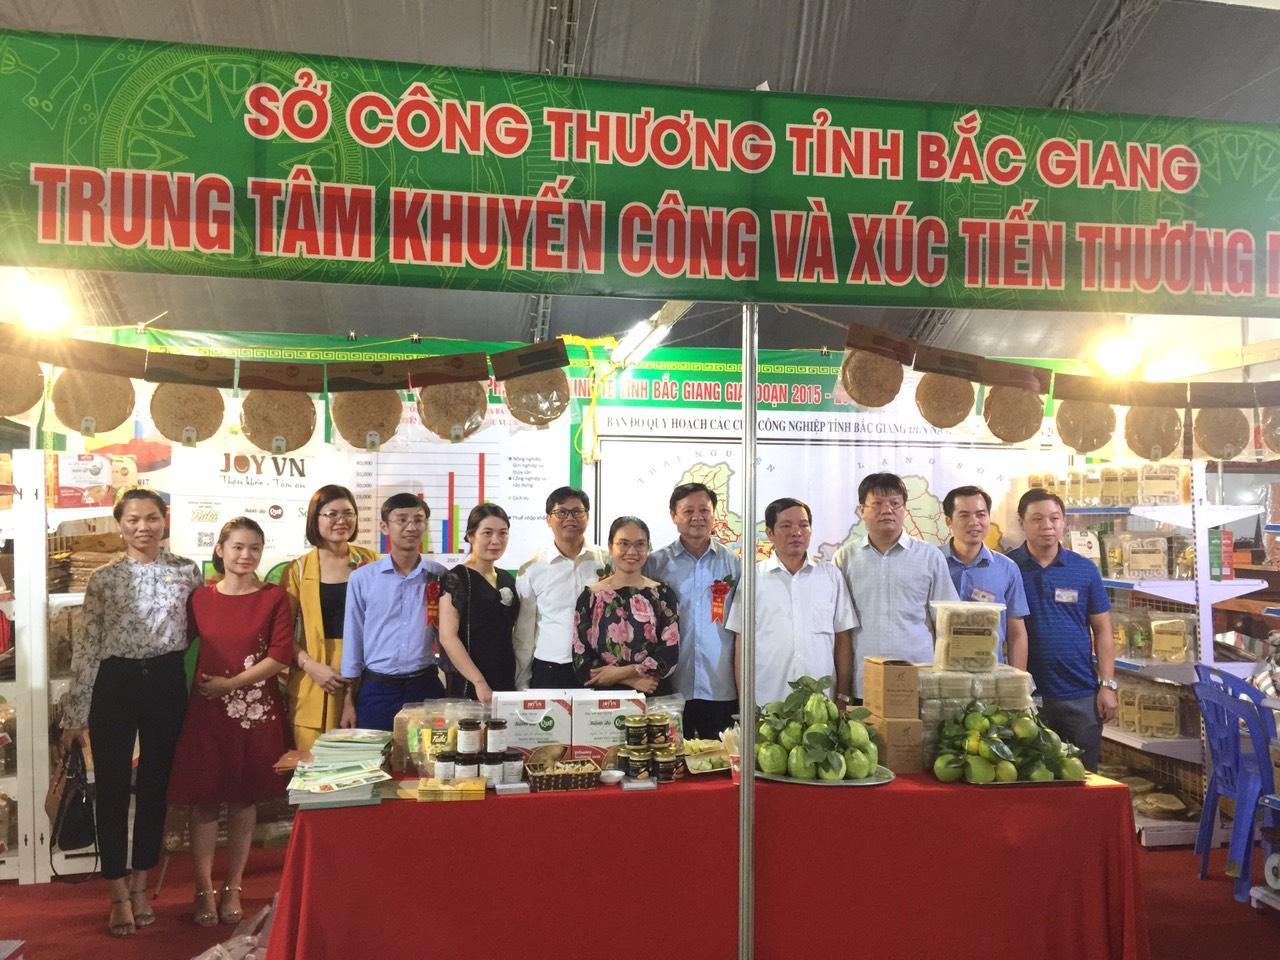 Mời tham gia Hội chợ Nông nghiệp và các sản phẩm OCOP khu vực phía Bắc - Lào Cai năm 2020 